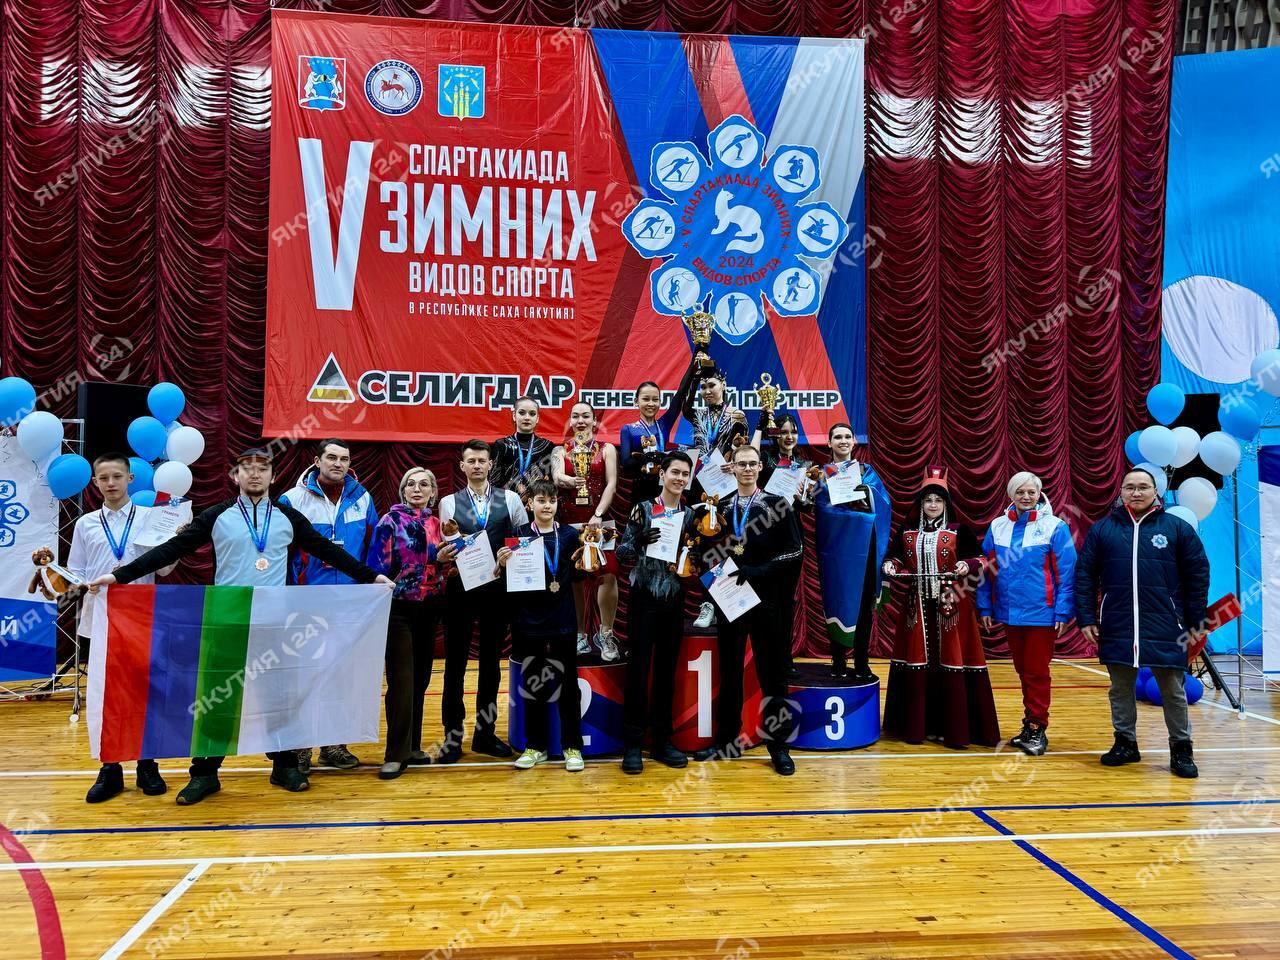 Сборная Якутска заняла первое место по фигурному катанию на спартакиаде зимних видов спорта в Нерюнгри